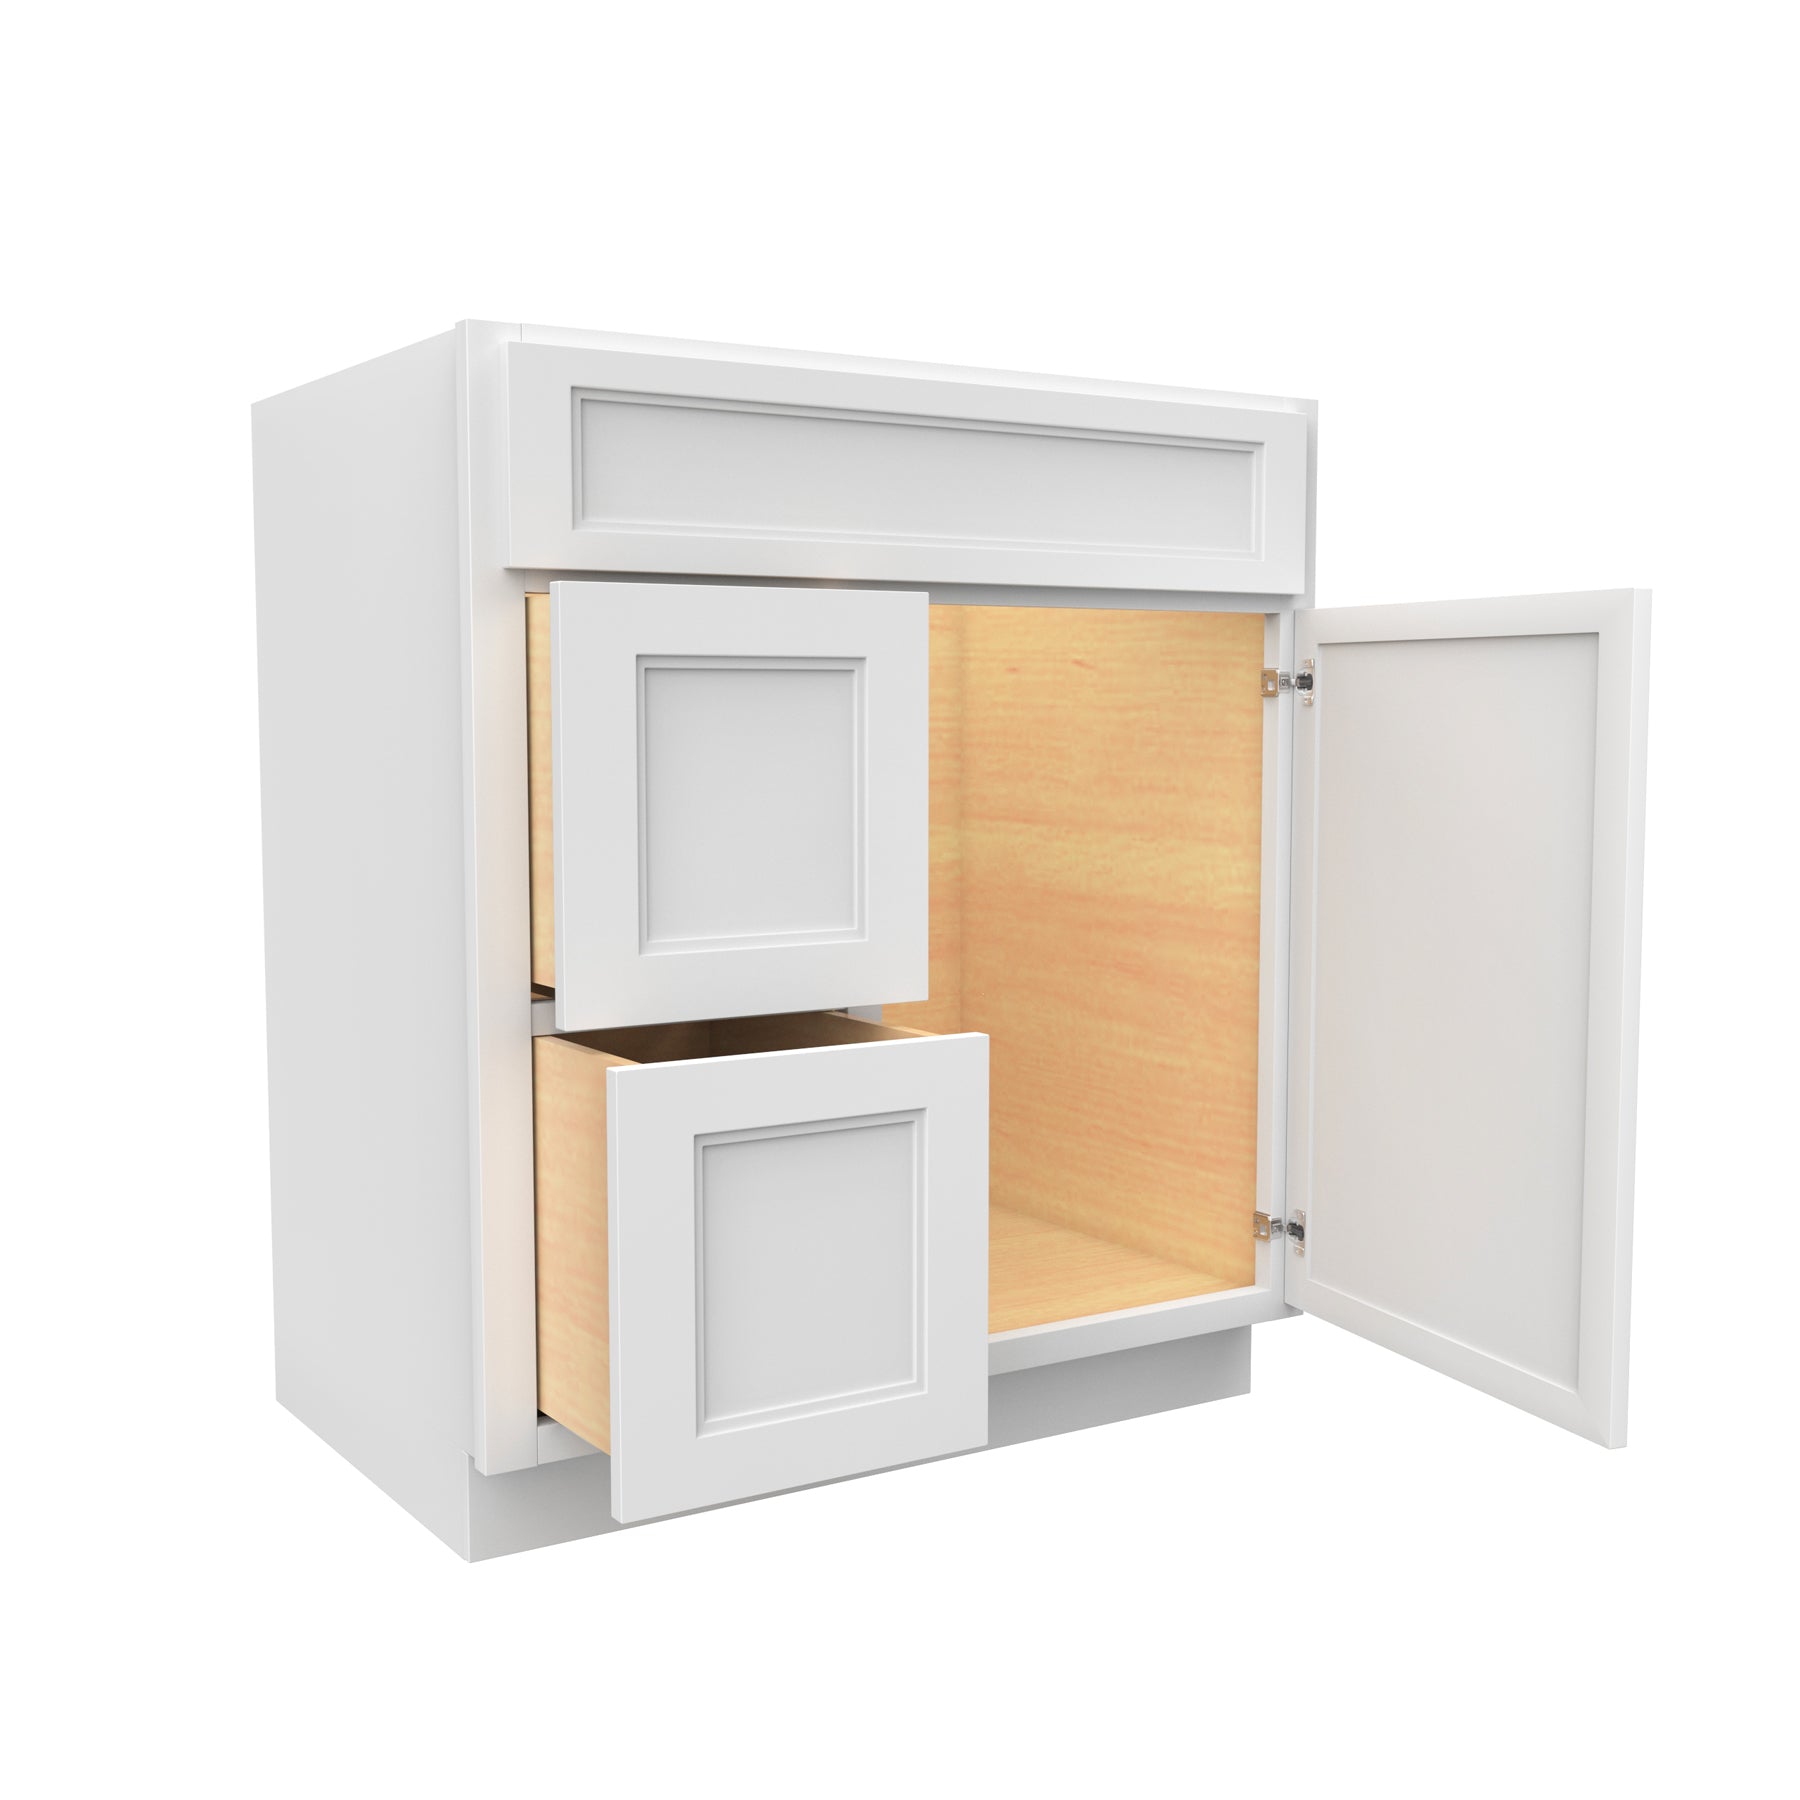 Fashion White - 1 Door 2 Drawer Vanity Sink Base Cabinet | 30"W x 34.5"H x 21"D